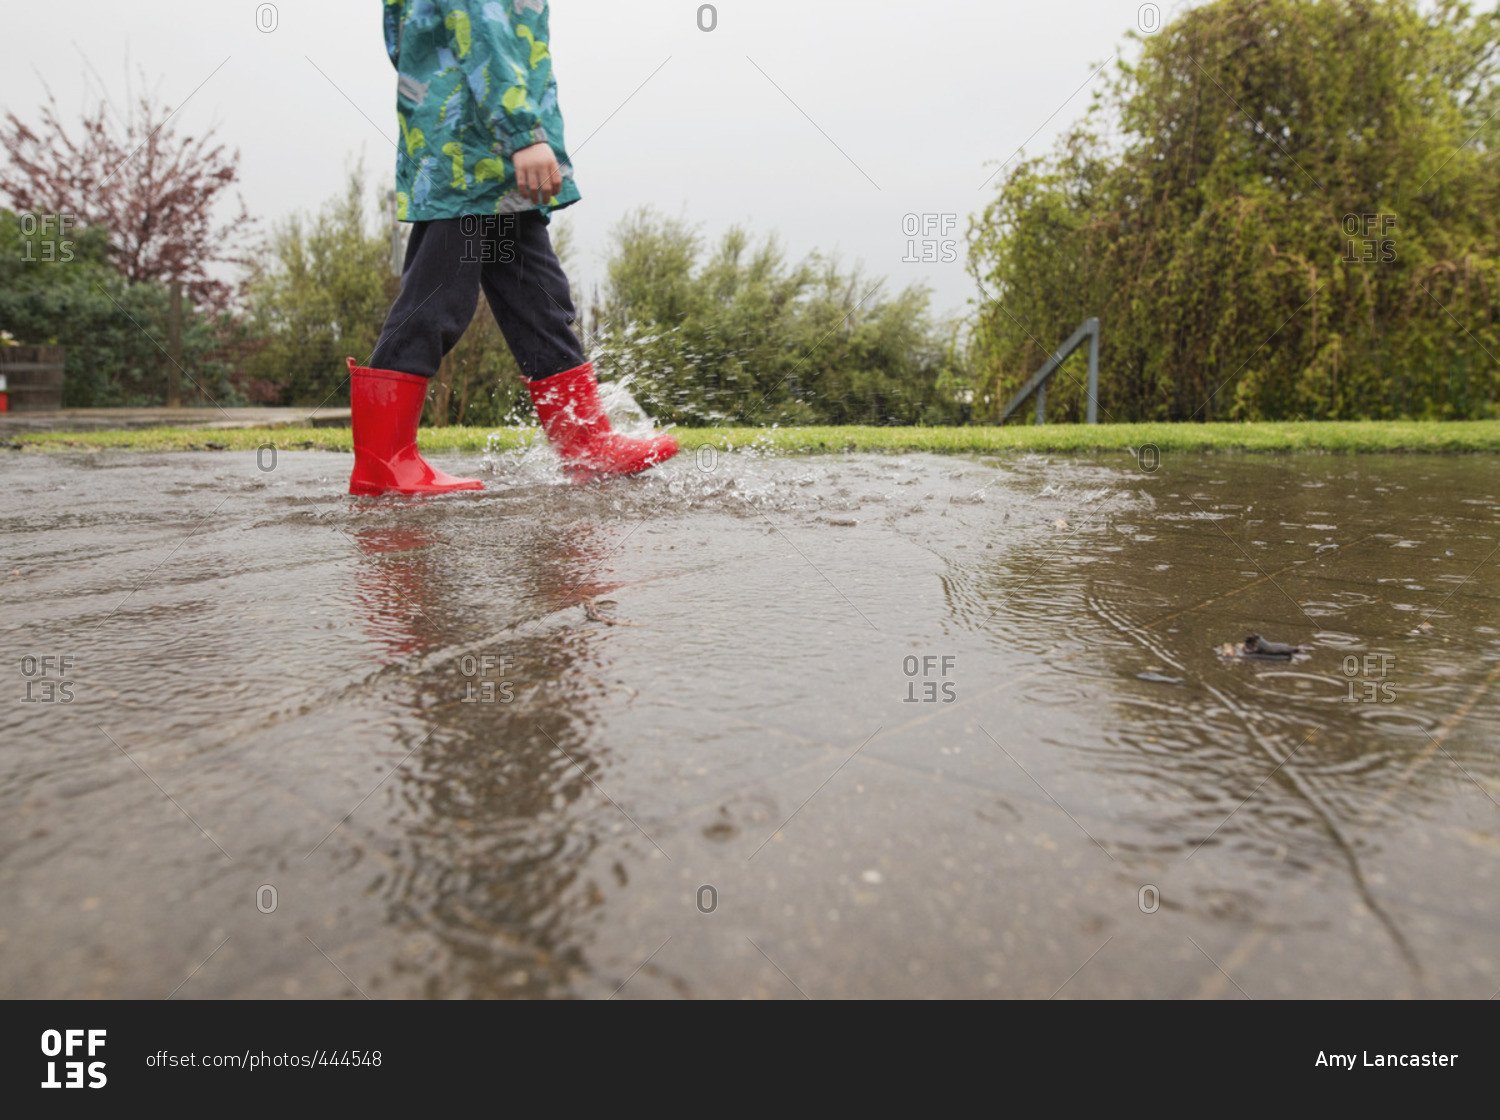 Child walking in rain water on ground